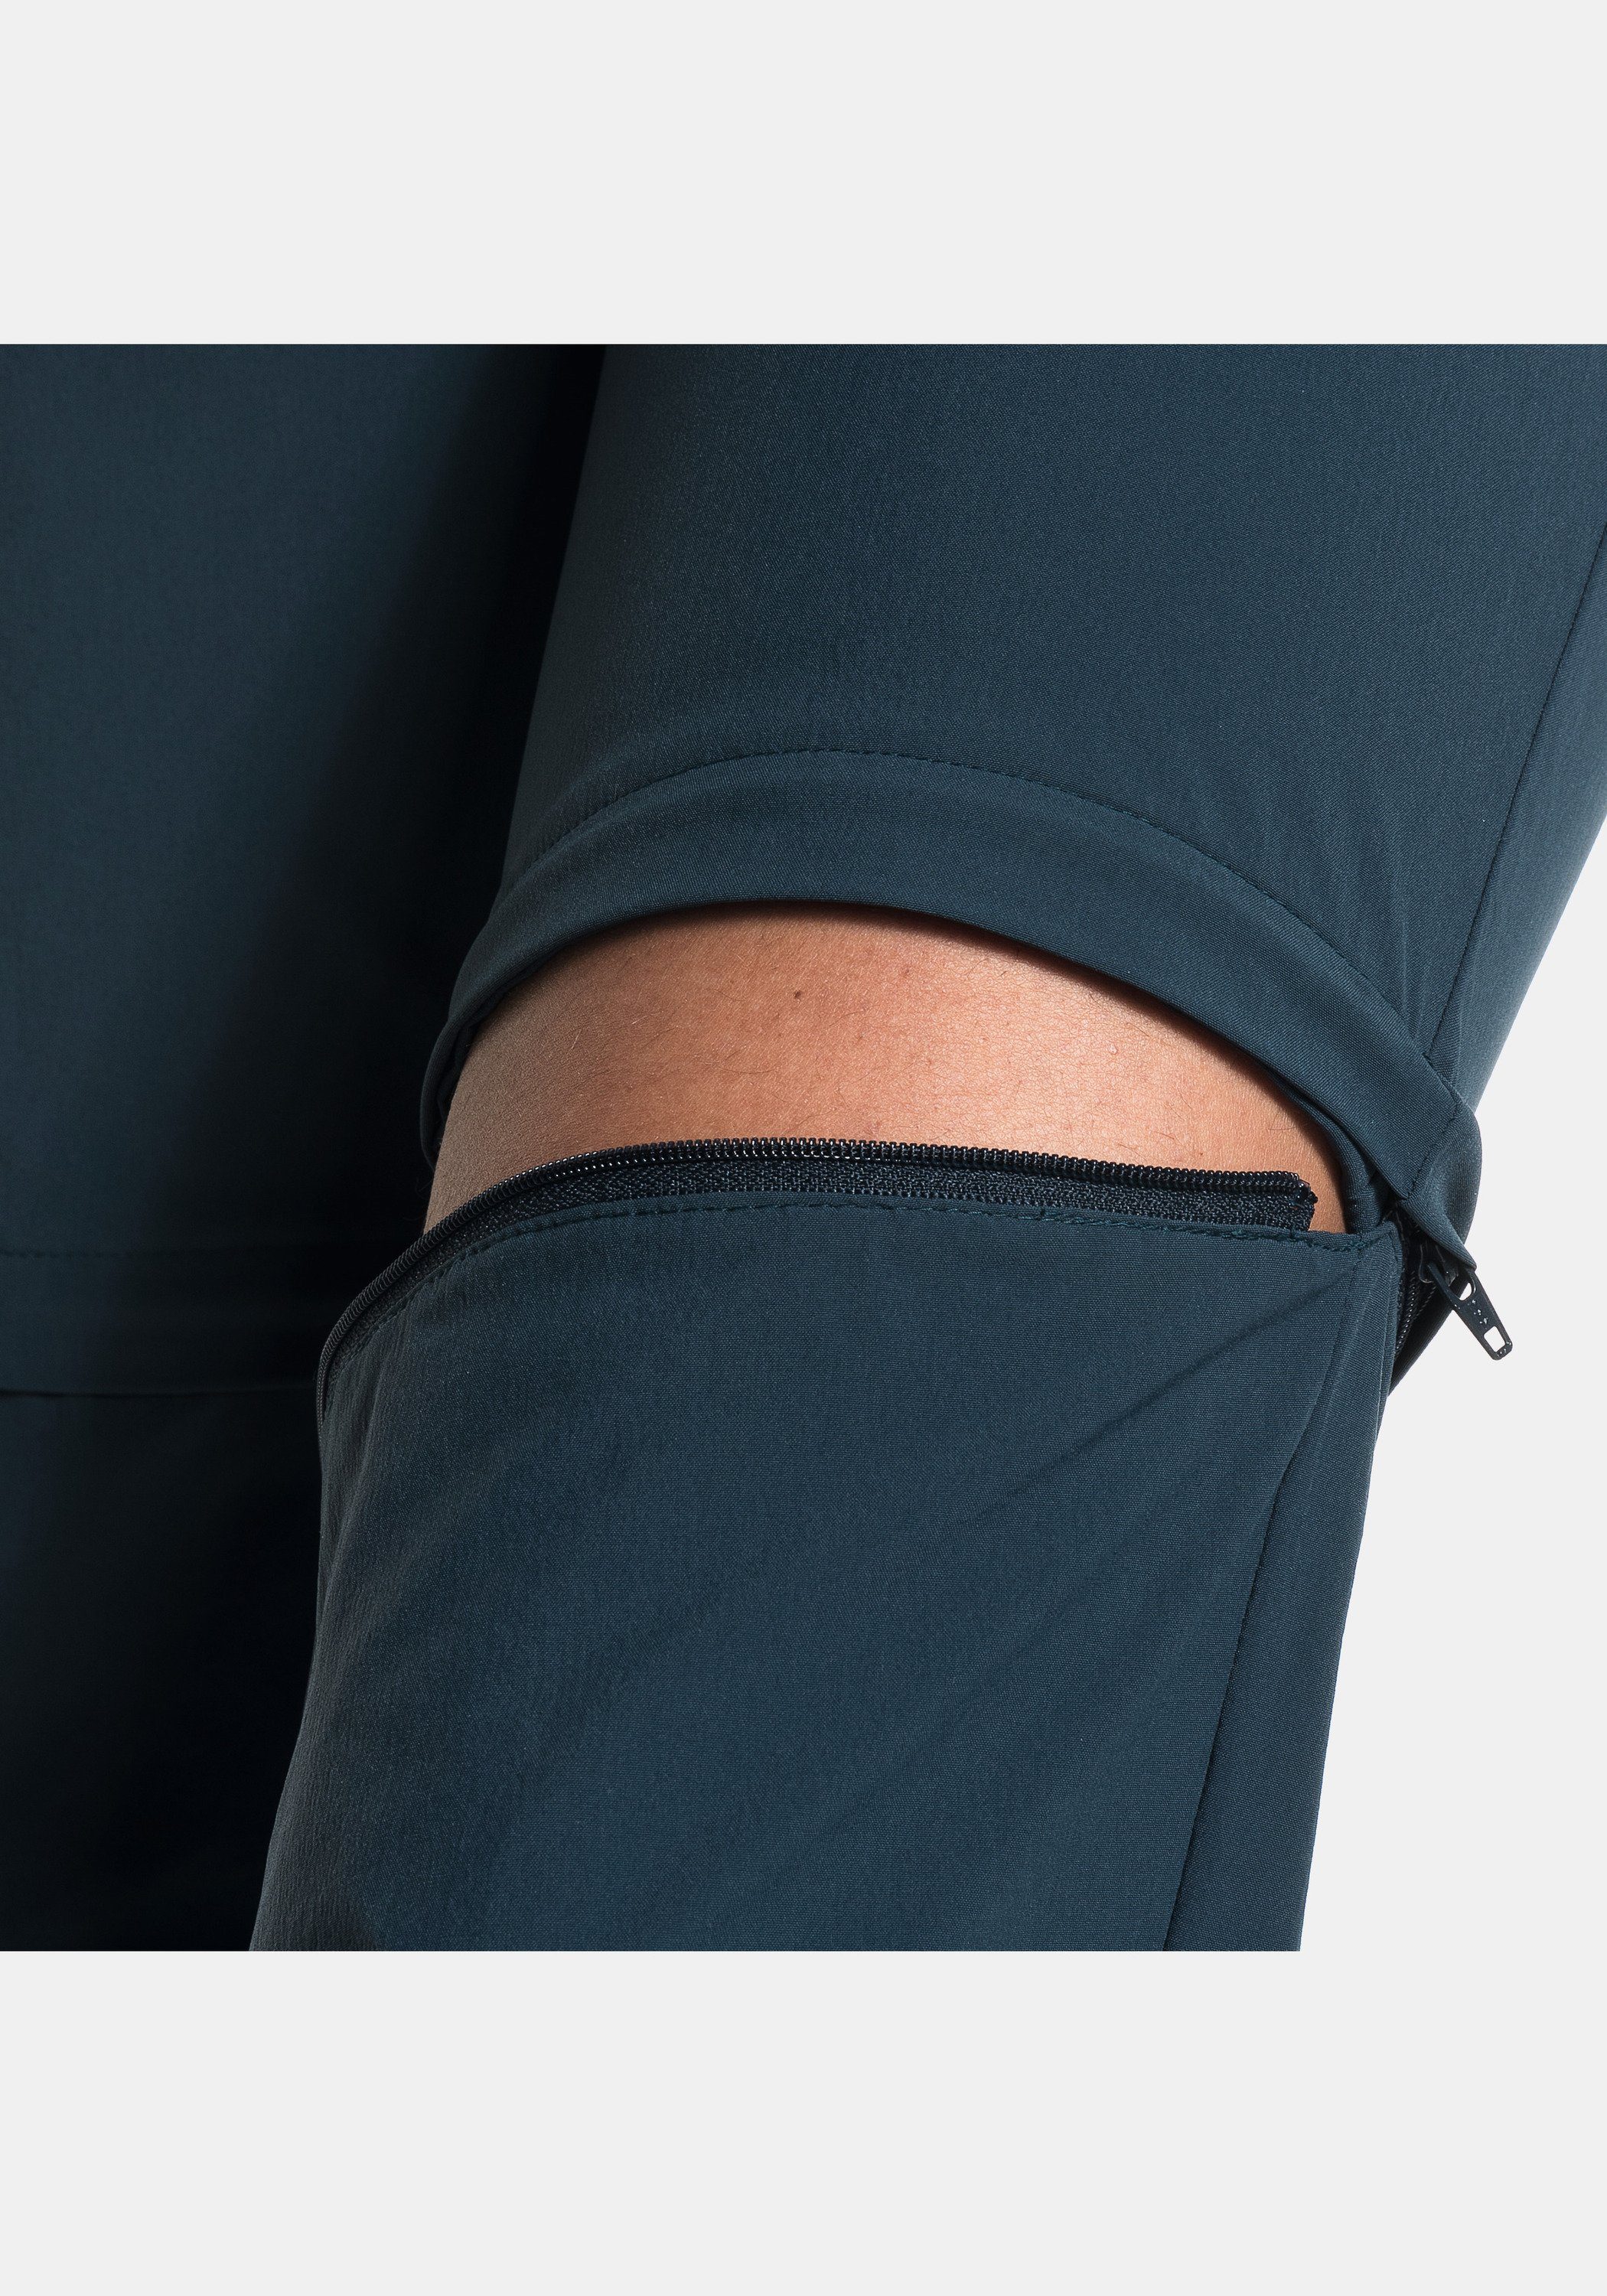 dunkelblau Pants Zip-away-Hose Zip Off Schöffel